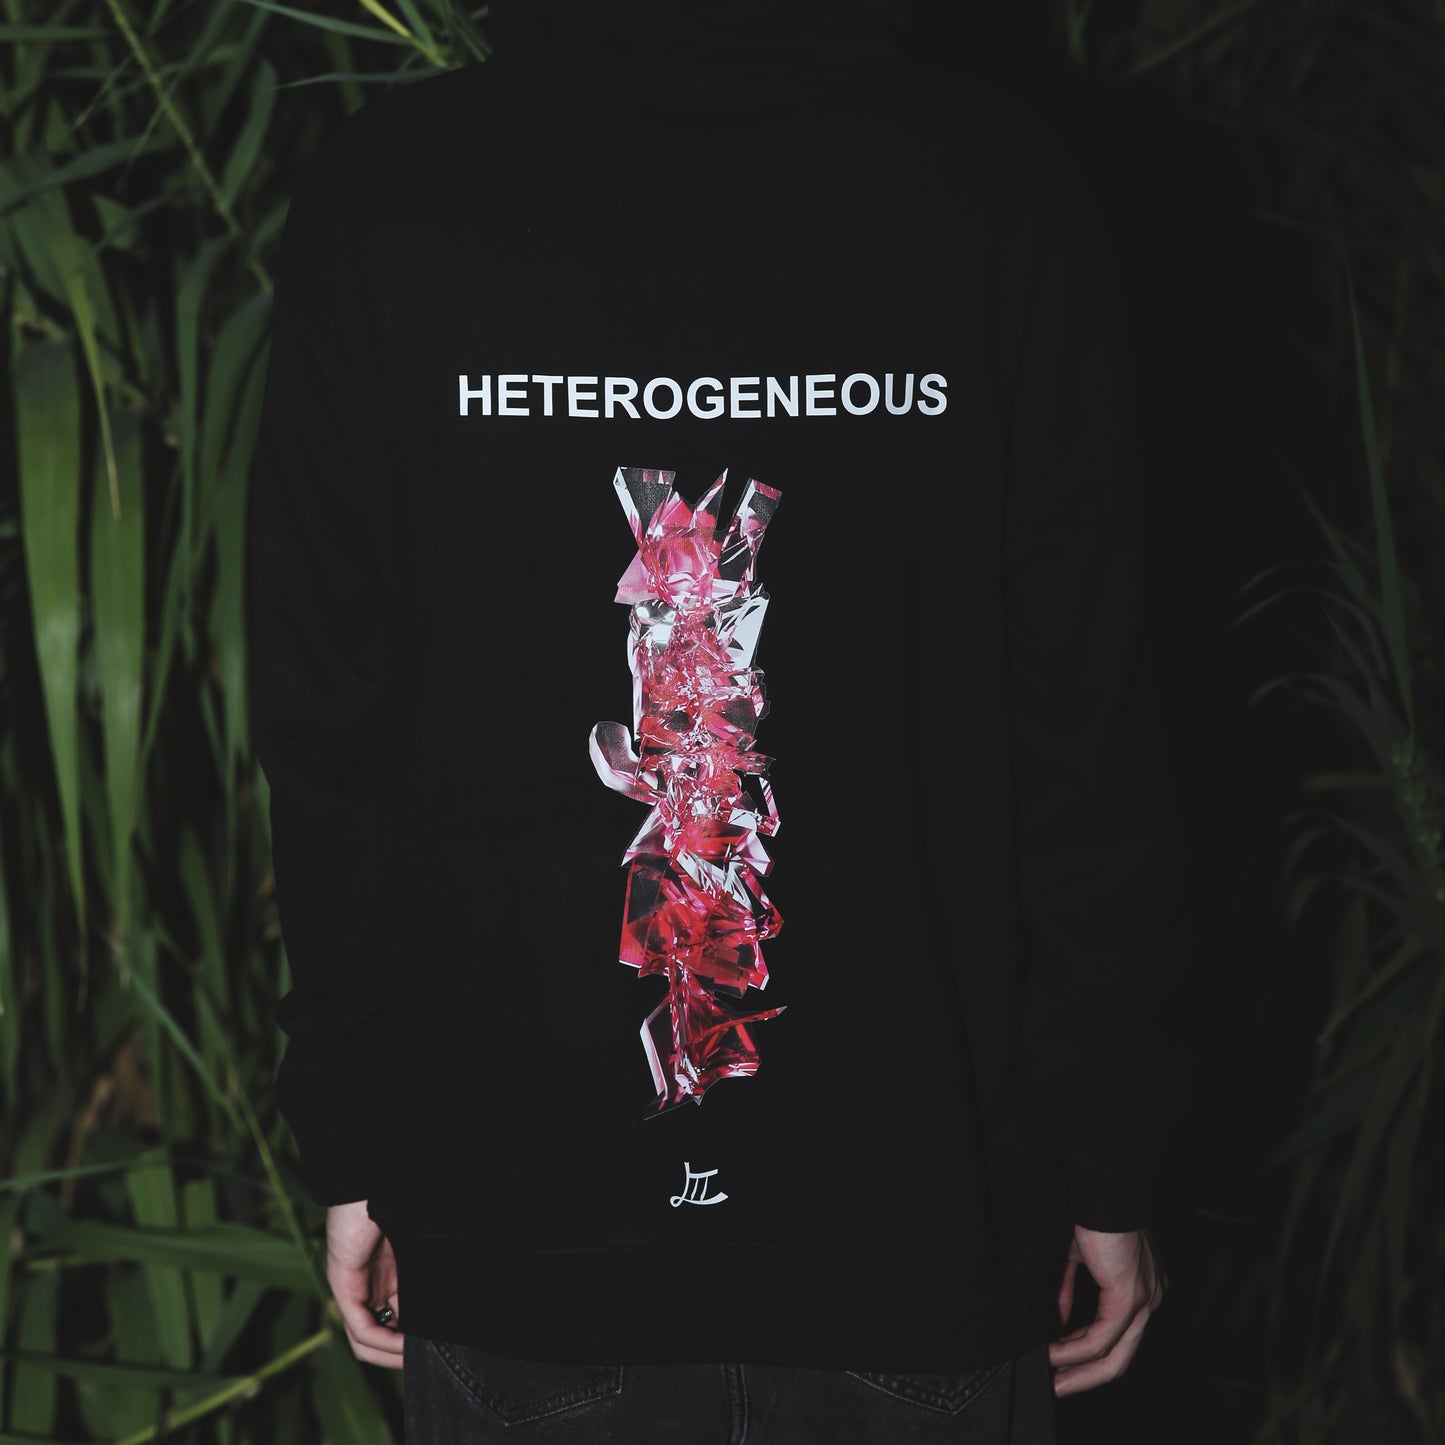 Le Trio Terre Heterogeneous Hoodie/T-shirt